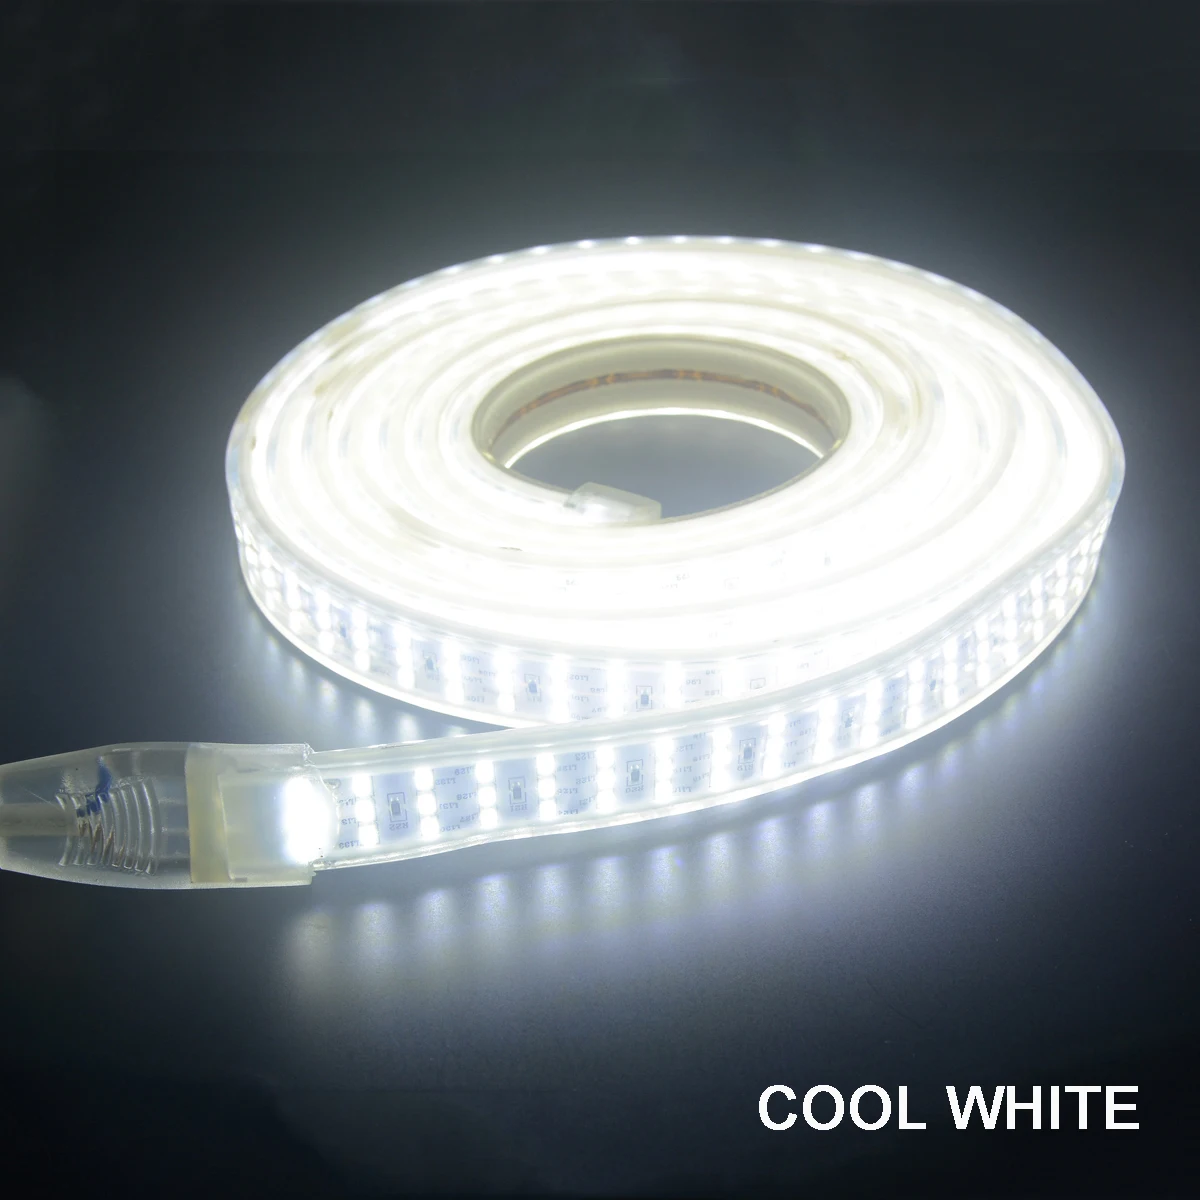 276 светодиодный s/m SMD 2835 Светодиодная лента 220 В лампа водонепроницаемый трехрядный светодиодный ленточный светильник гибкий светодиодный светильник уличная декоративная подсветка - Испускаемый цвет: Cool White